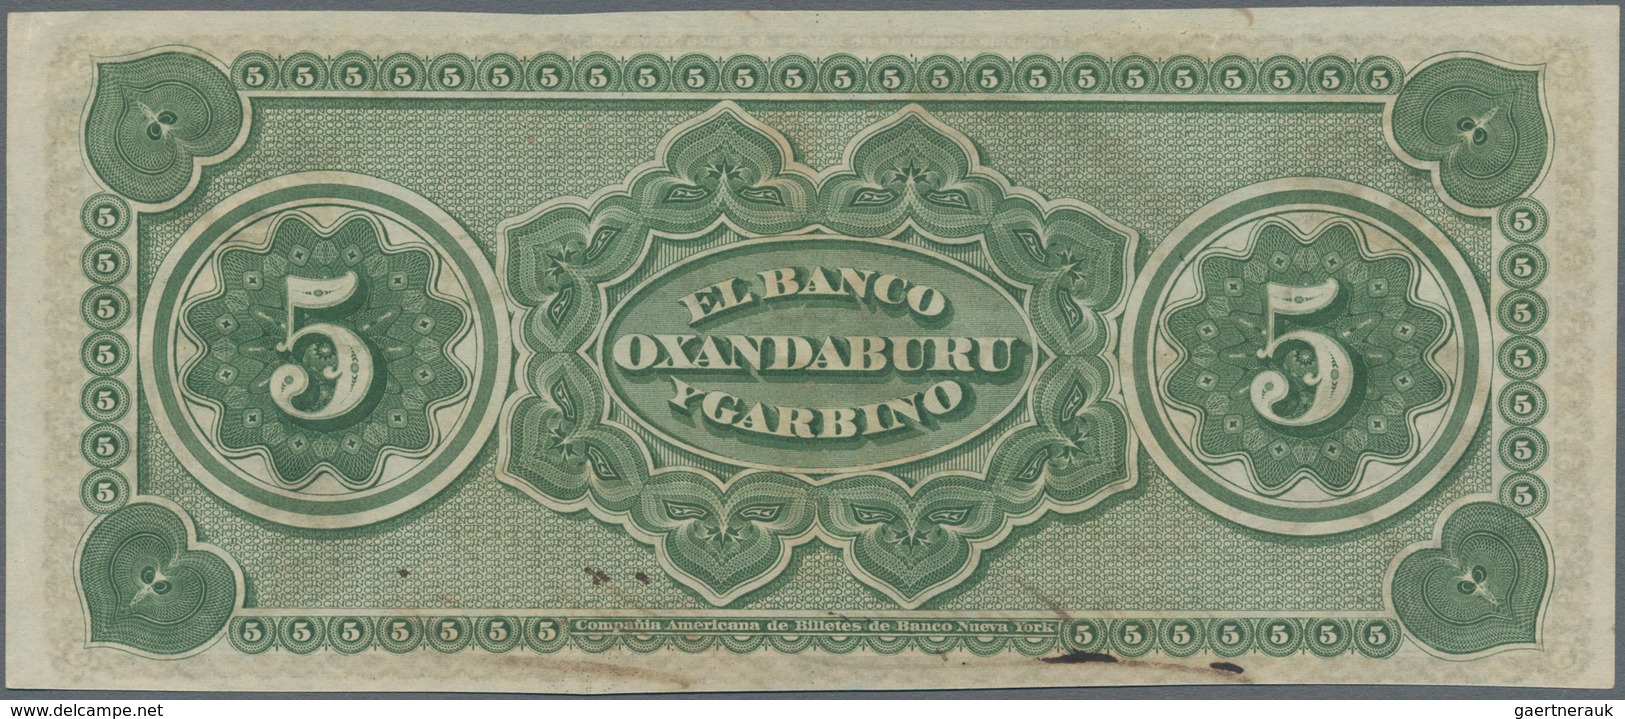 Argentina / Argentinien: Banco Oxandaburu Y Garbino 5 Pesos Fuertes 1869 With Red Overprint "BANCO D - Argentinien